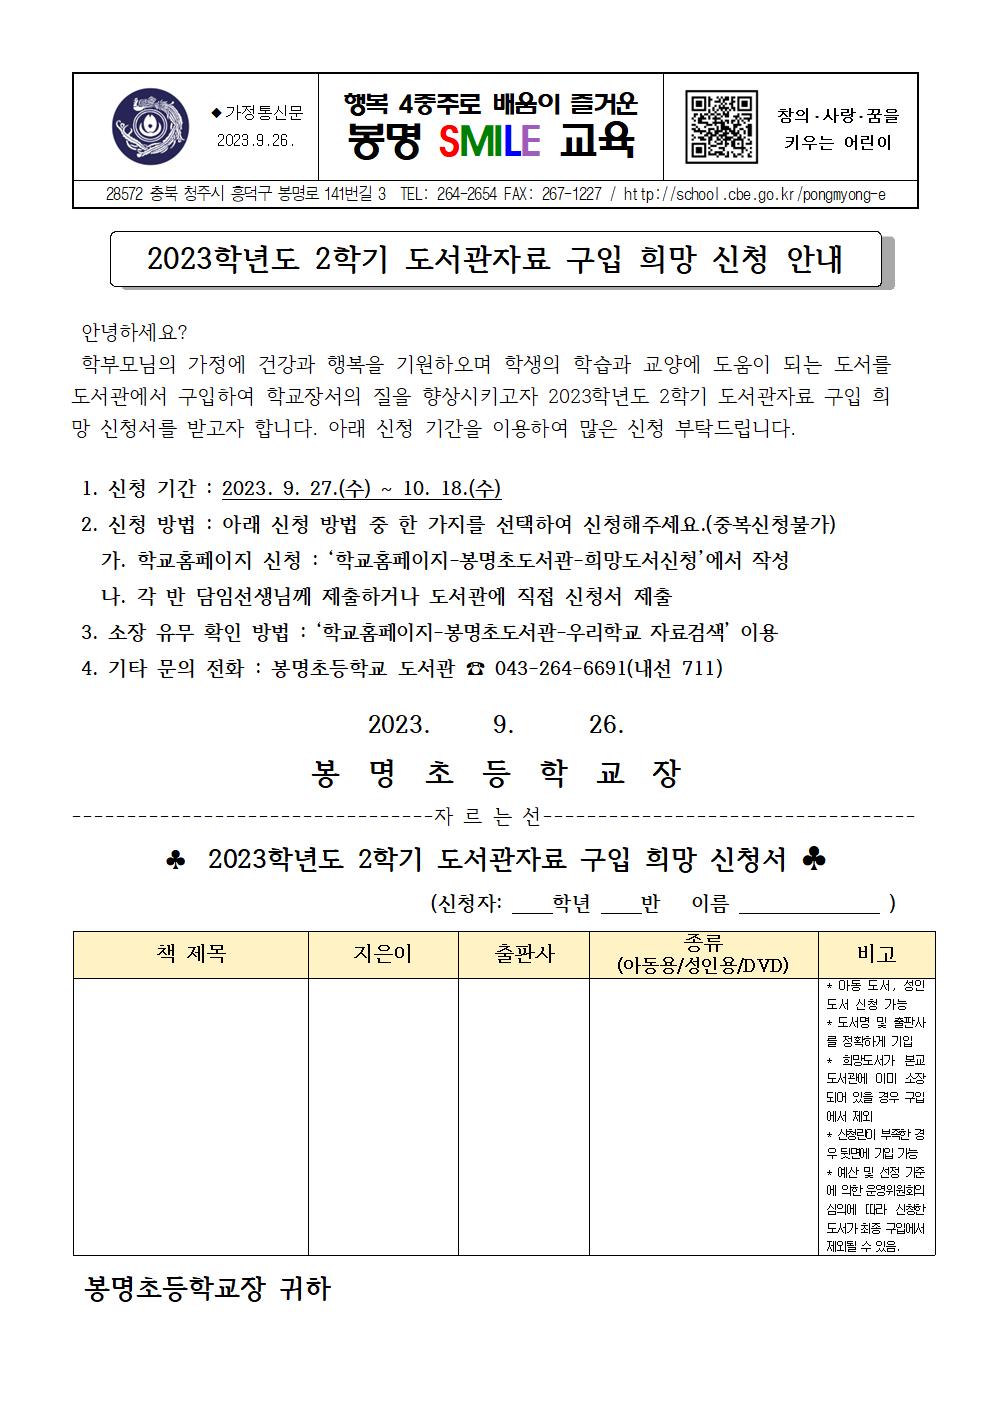 2023. 2학기 도서관자료 구입 희망 신청서 가정통신문